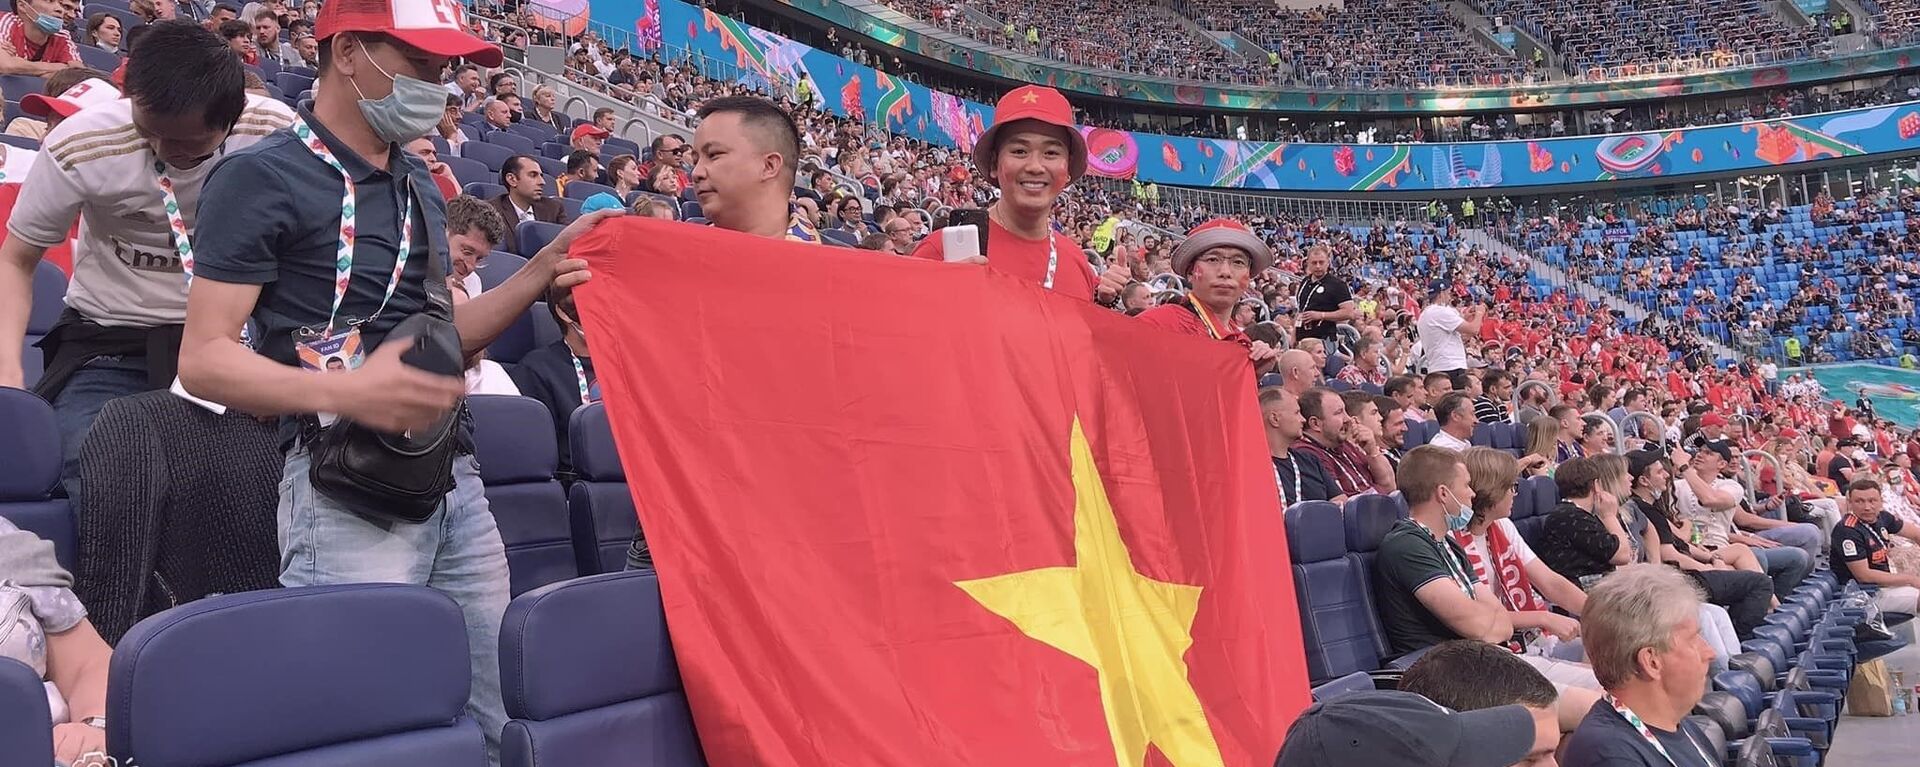 Cờ đỏ sao vàng trong trận tứ kết Euro 2020 trên sận vận động Gazprom Arena - Sputnik Việt Nam, 1920, 03.07.2021